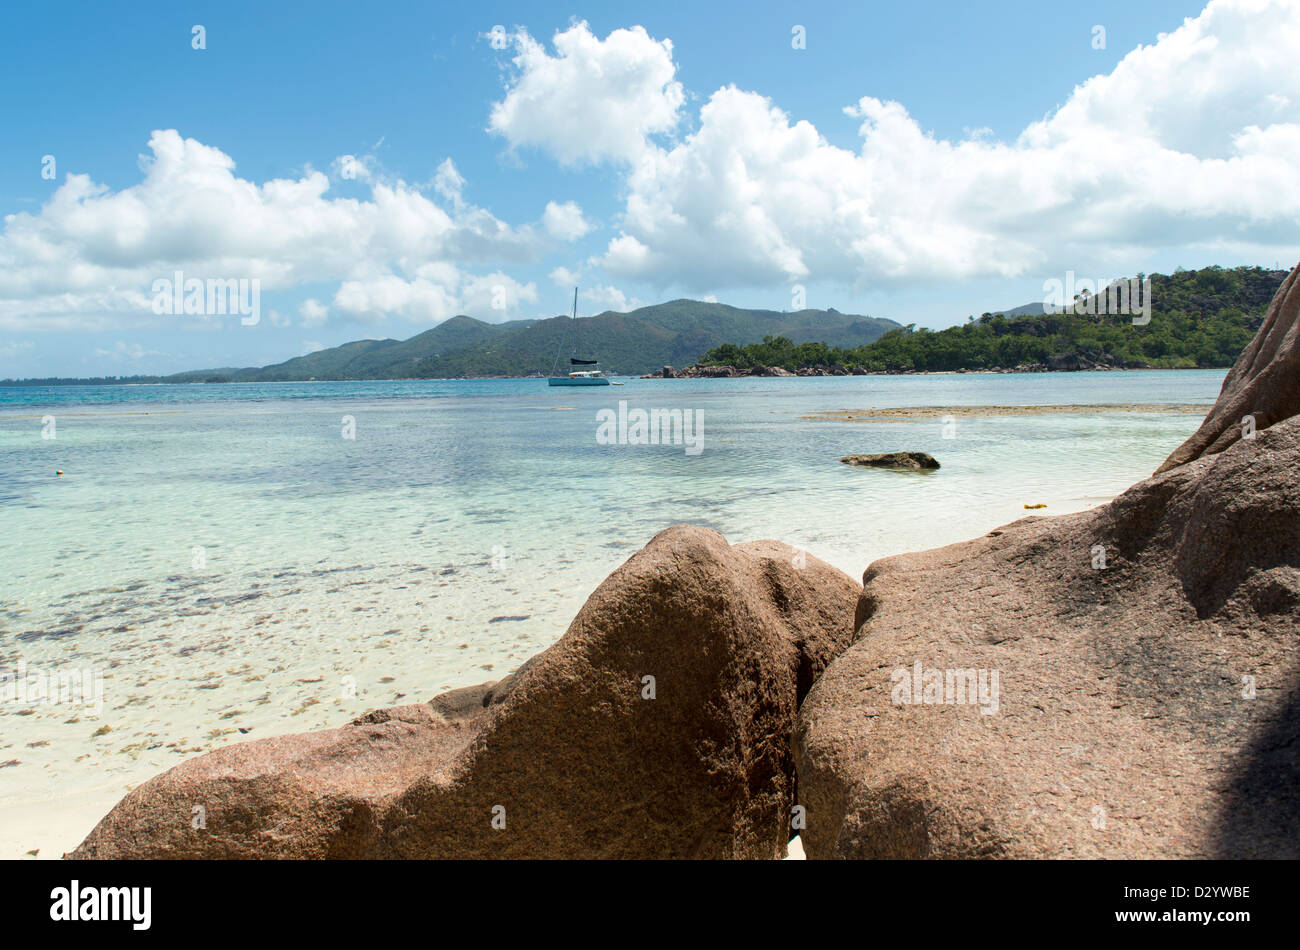 Tropicale sulla spiaggia di sabbia sulle isole Seicelle Foto Stock